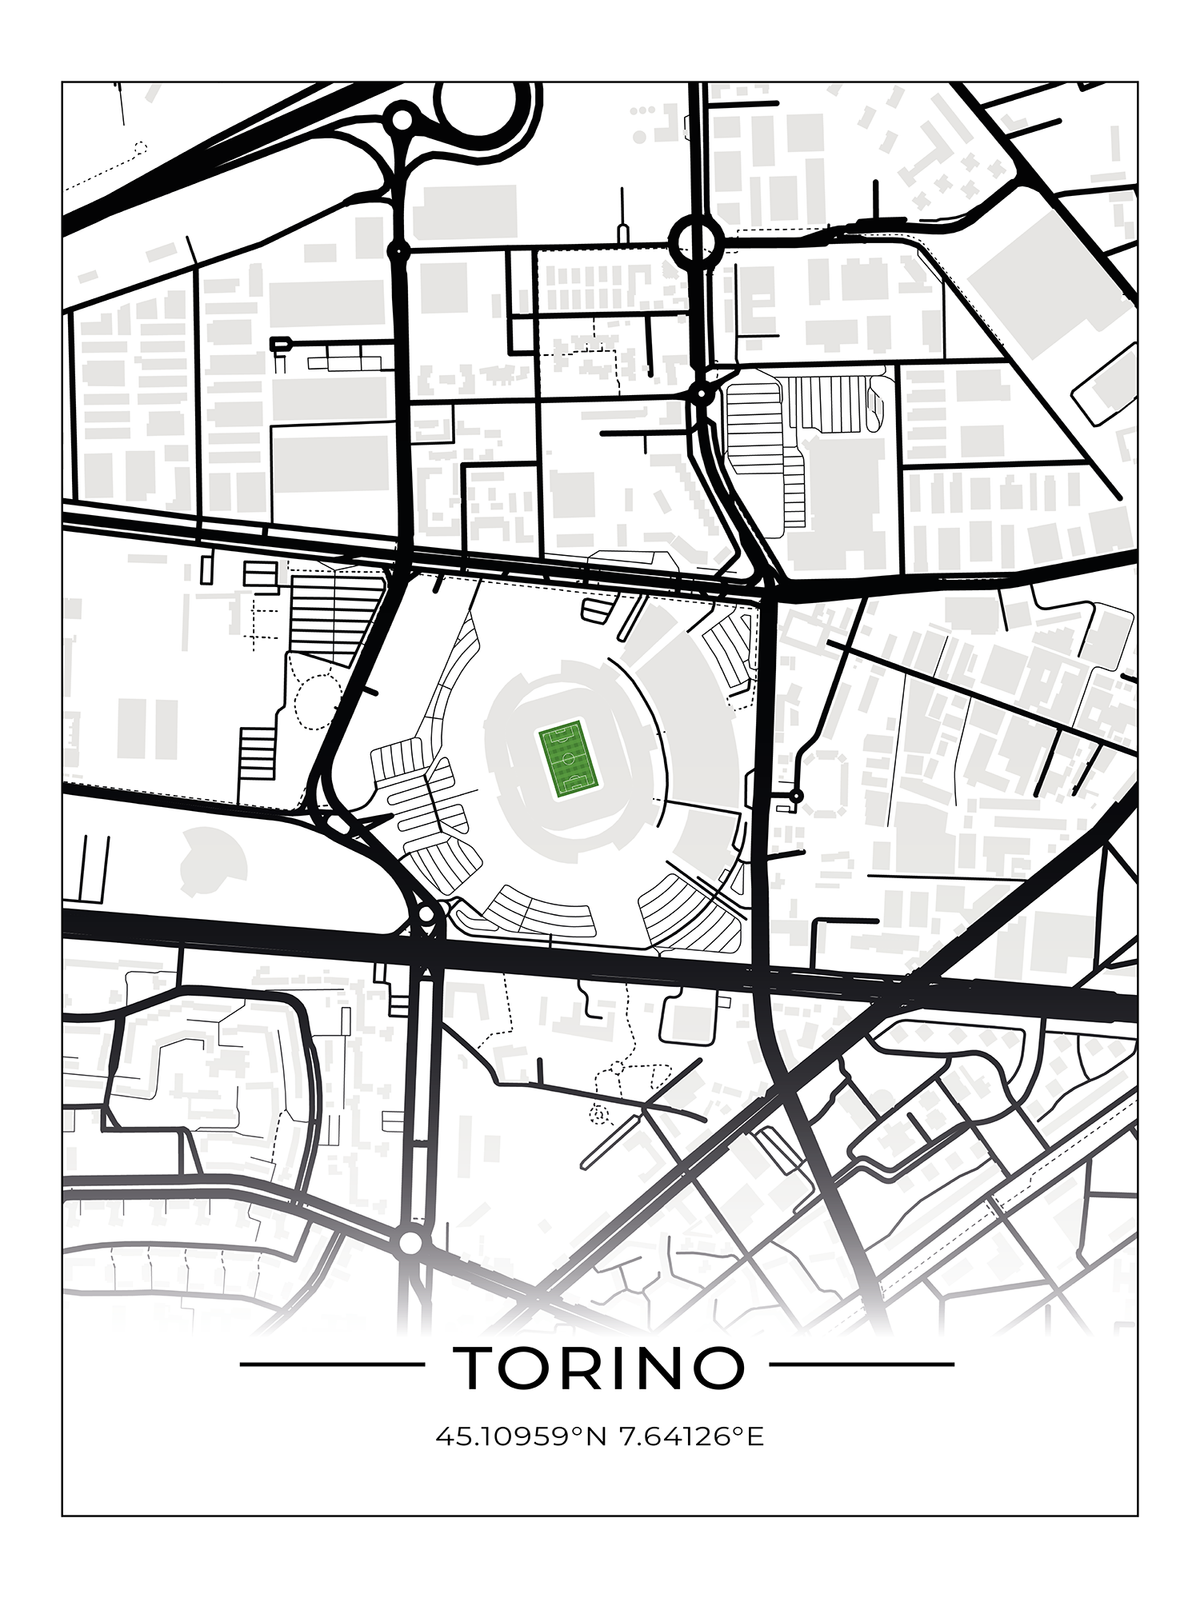 Stadion Poster Turin - Juventus Stadium